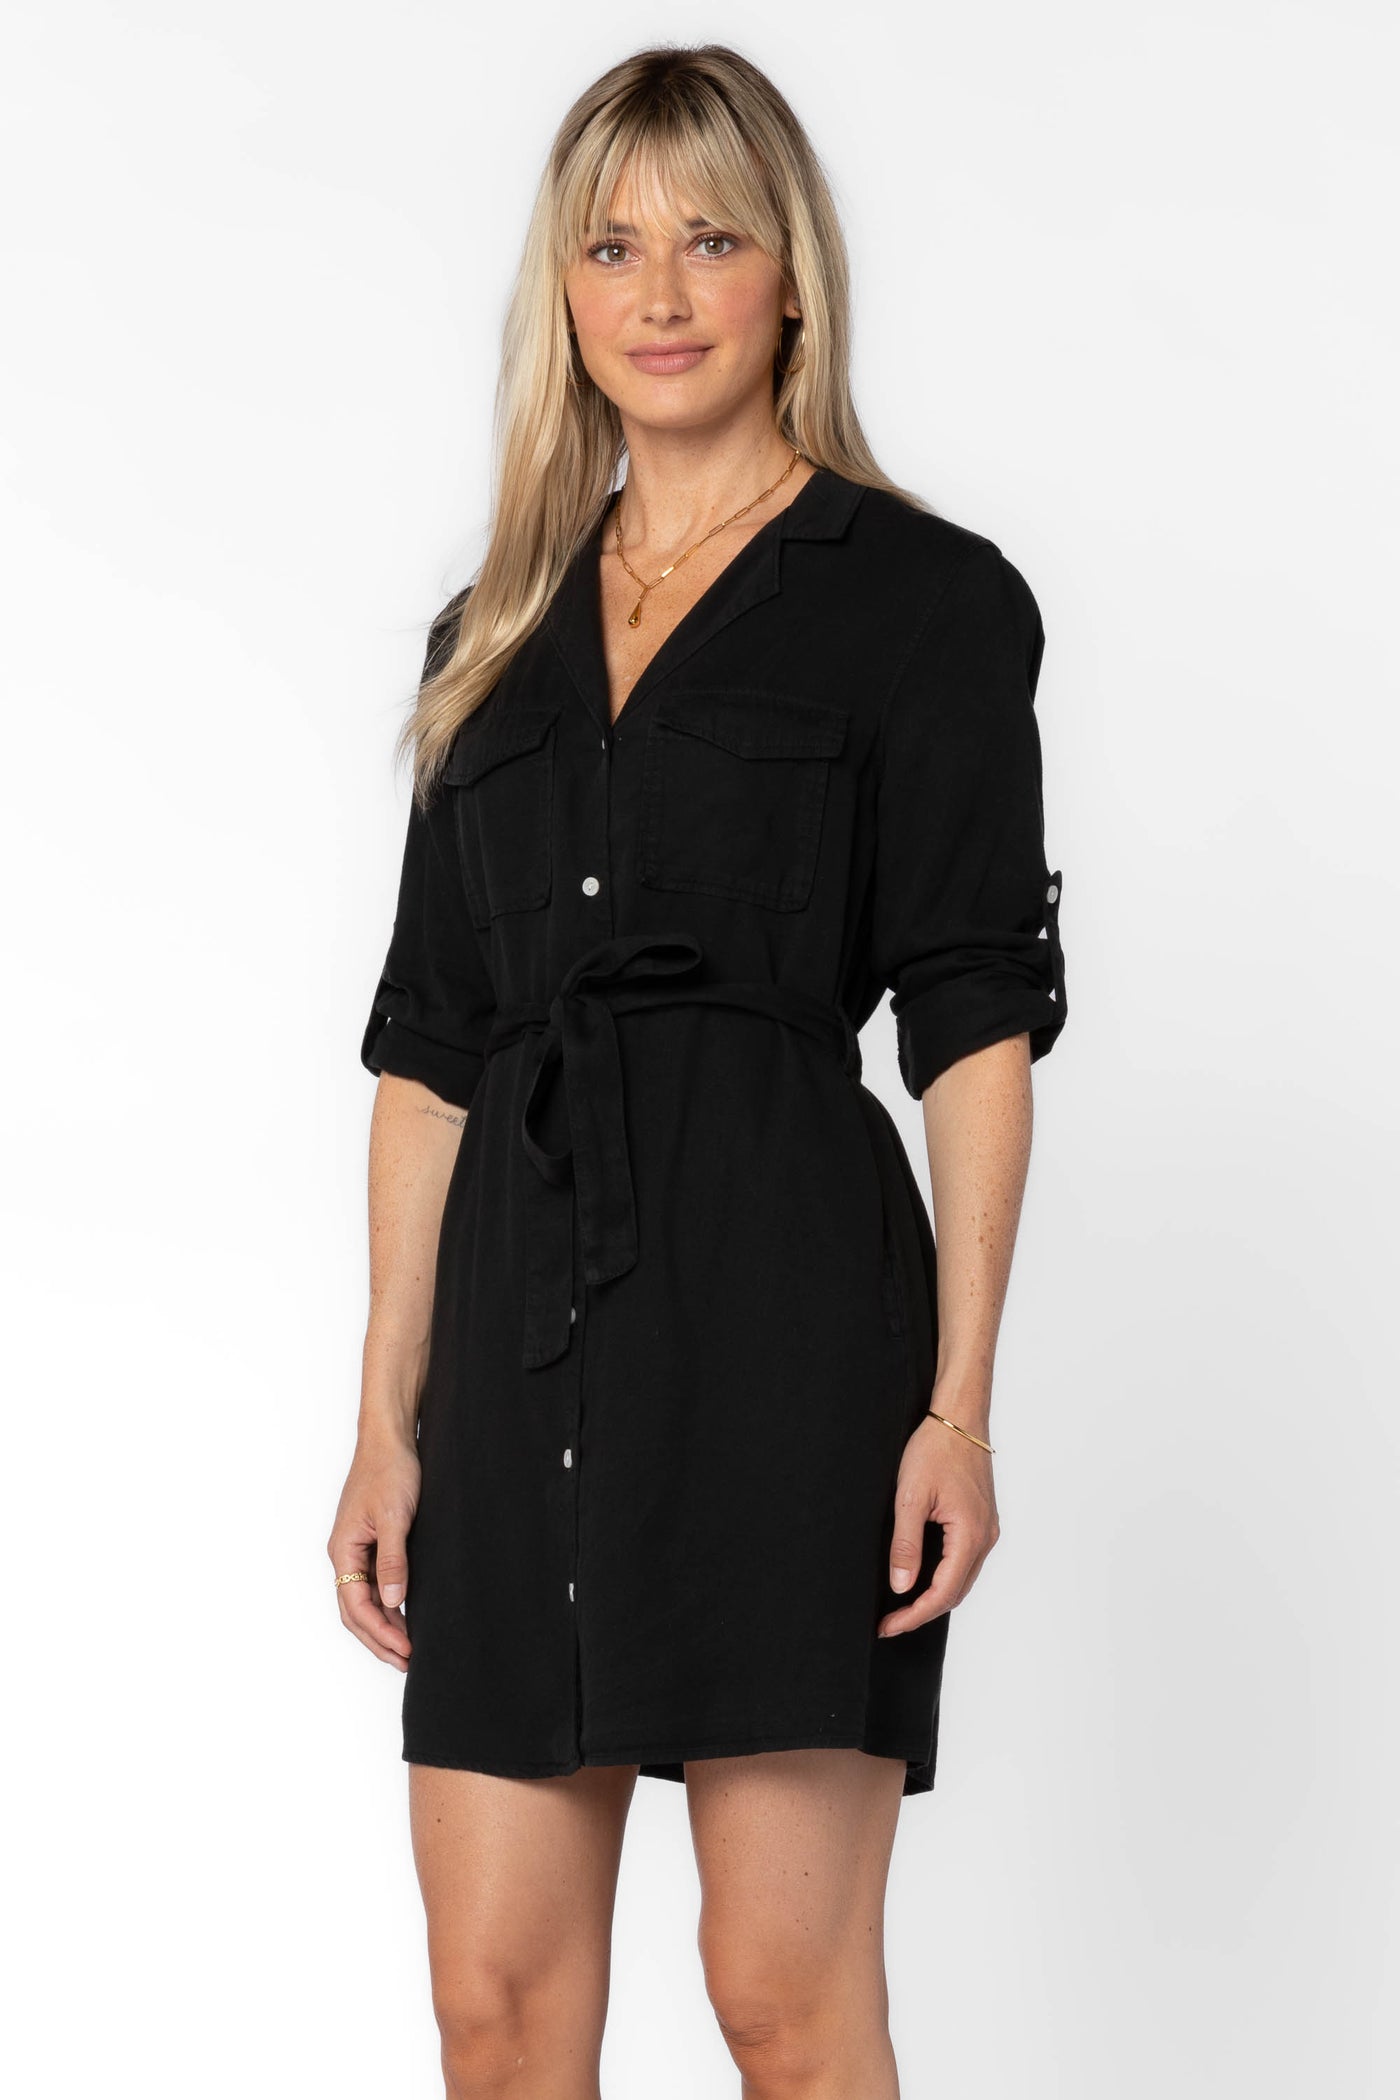 Dalisa Black Dress - Dresses - Velvet Heart Clothing